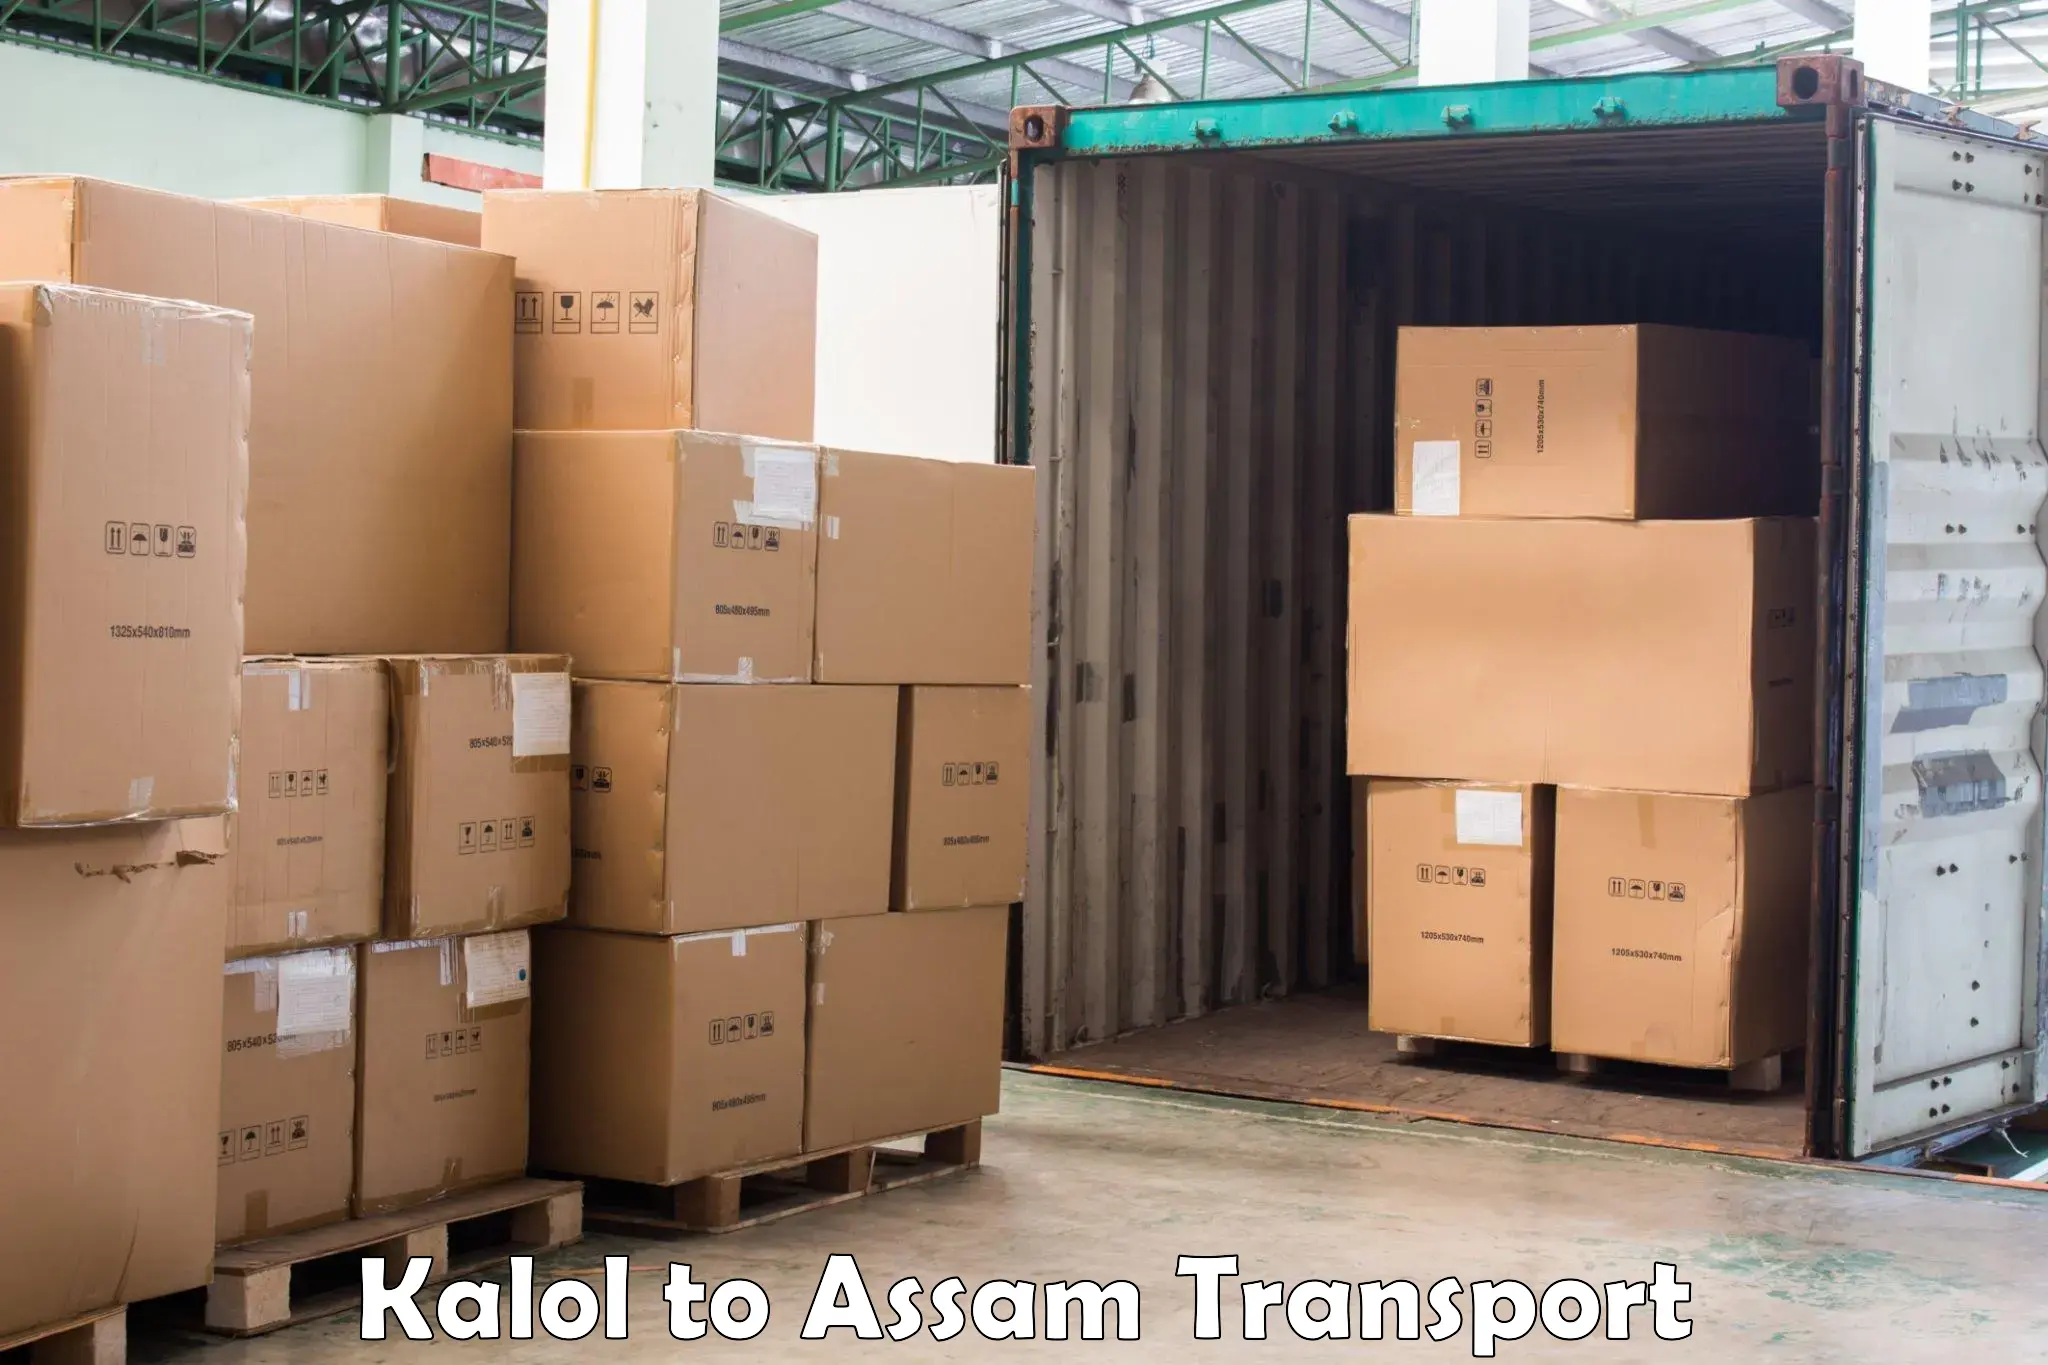 Commercial transport service Kalol to Jorabat